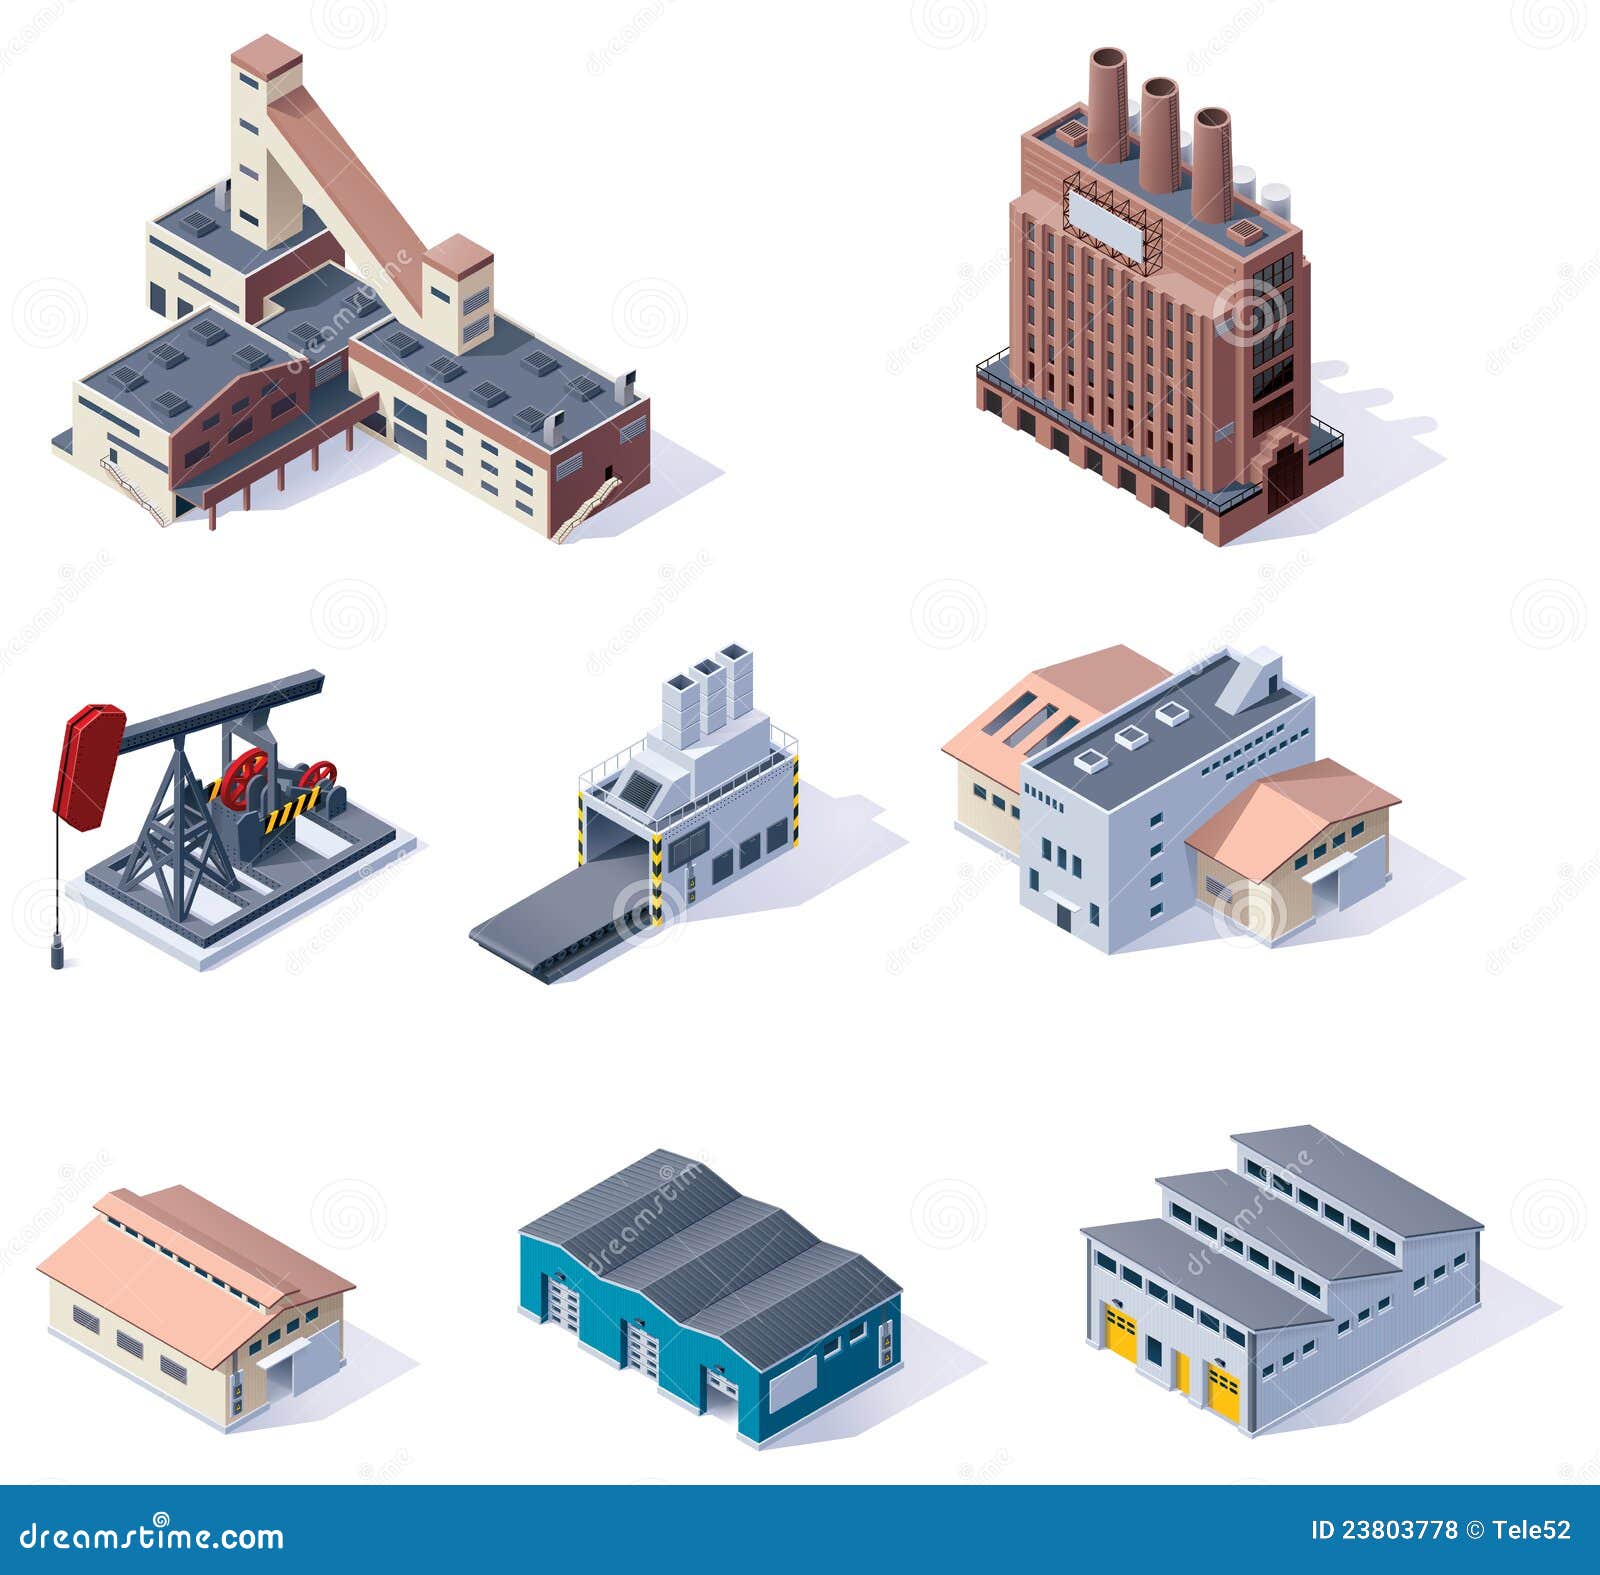  isometric buildings. industrial